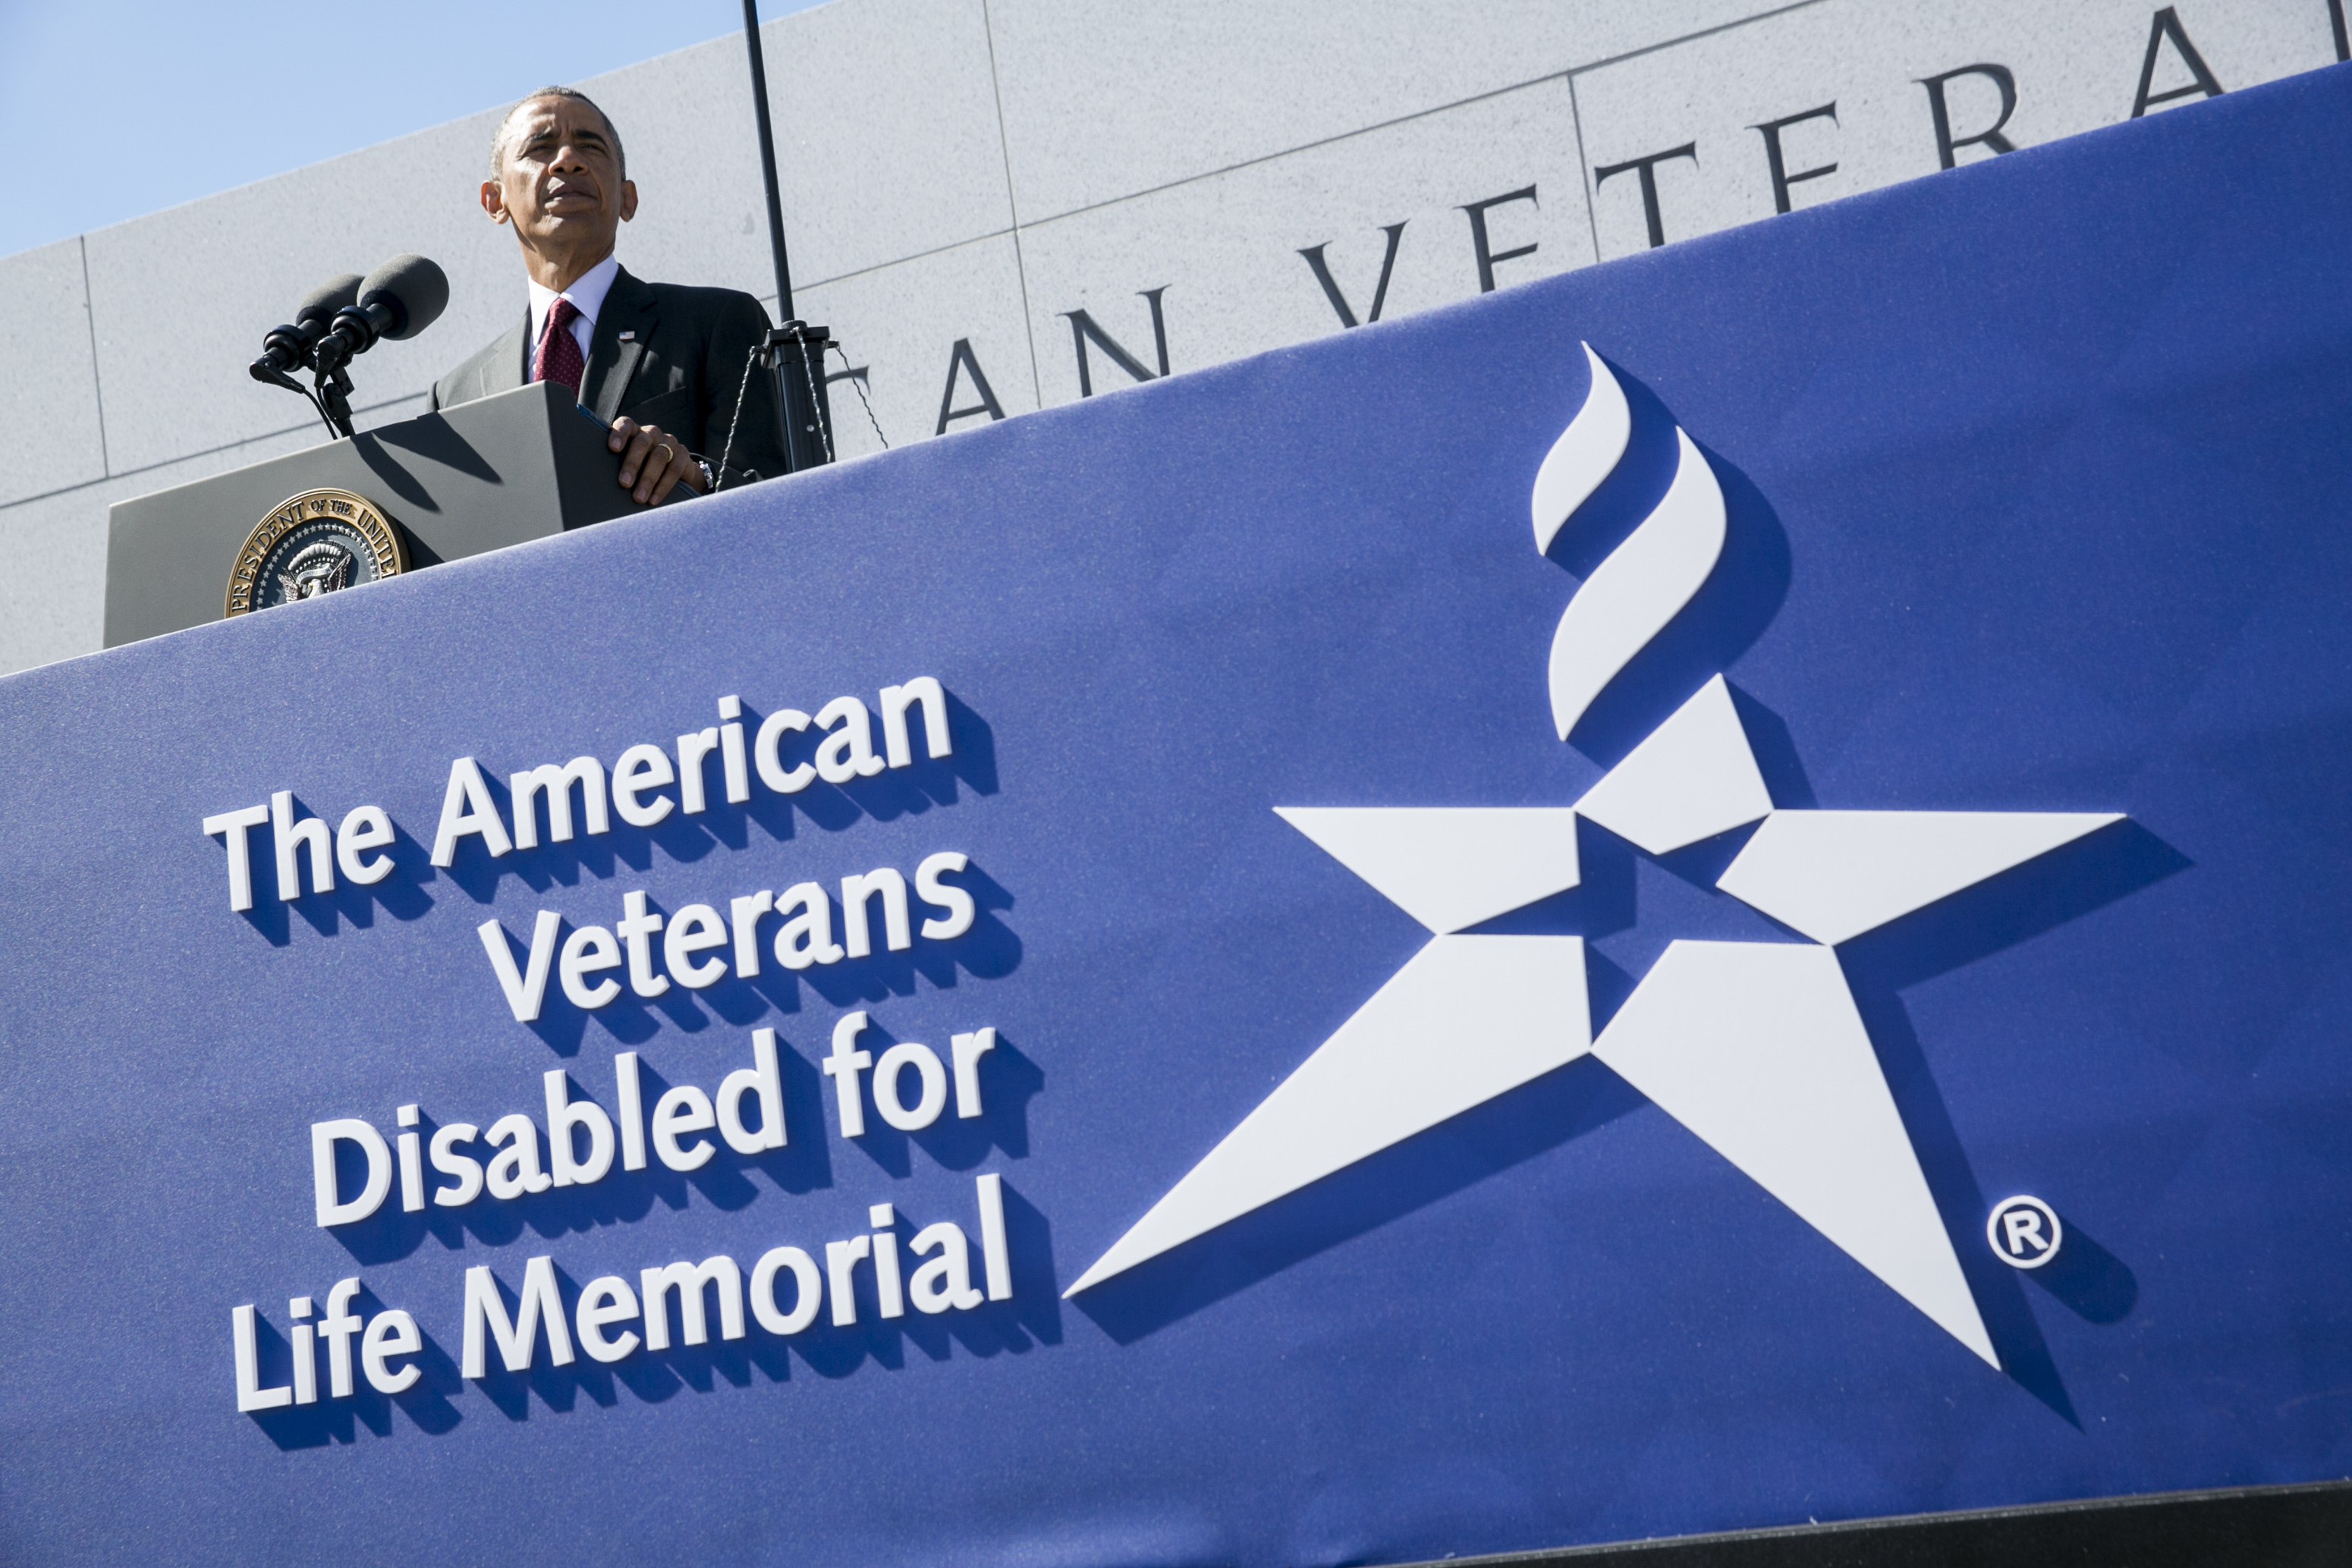 Obama Speaks At Disabled Veterans Memorial Dedication